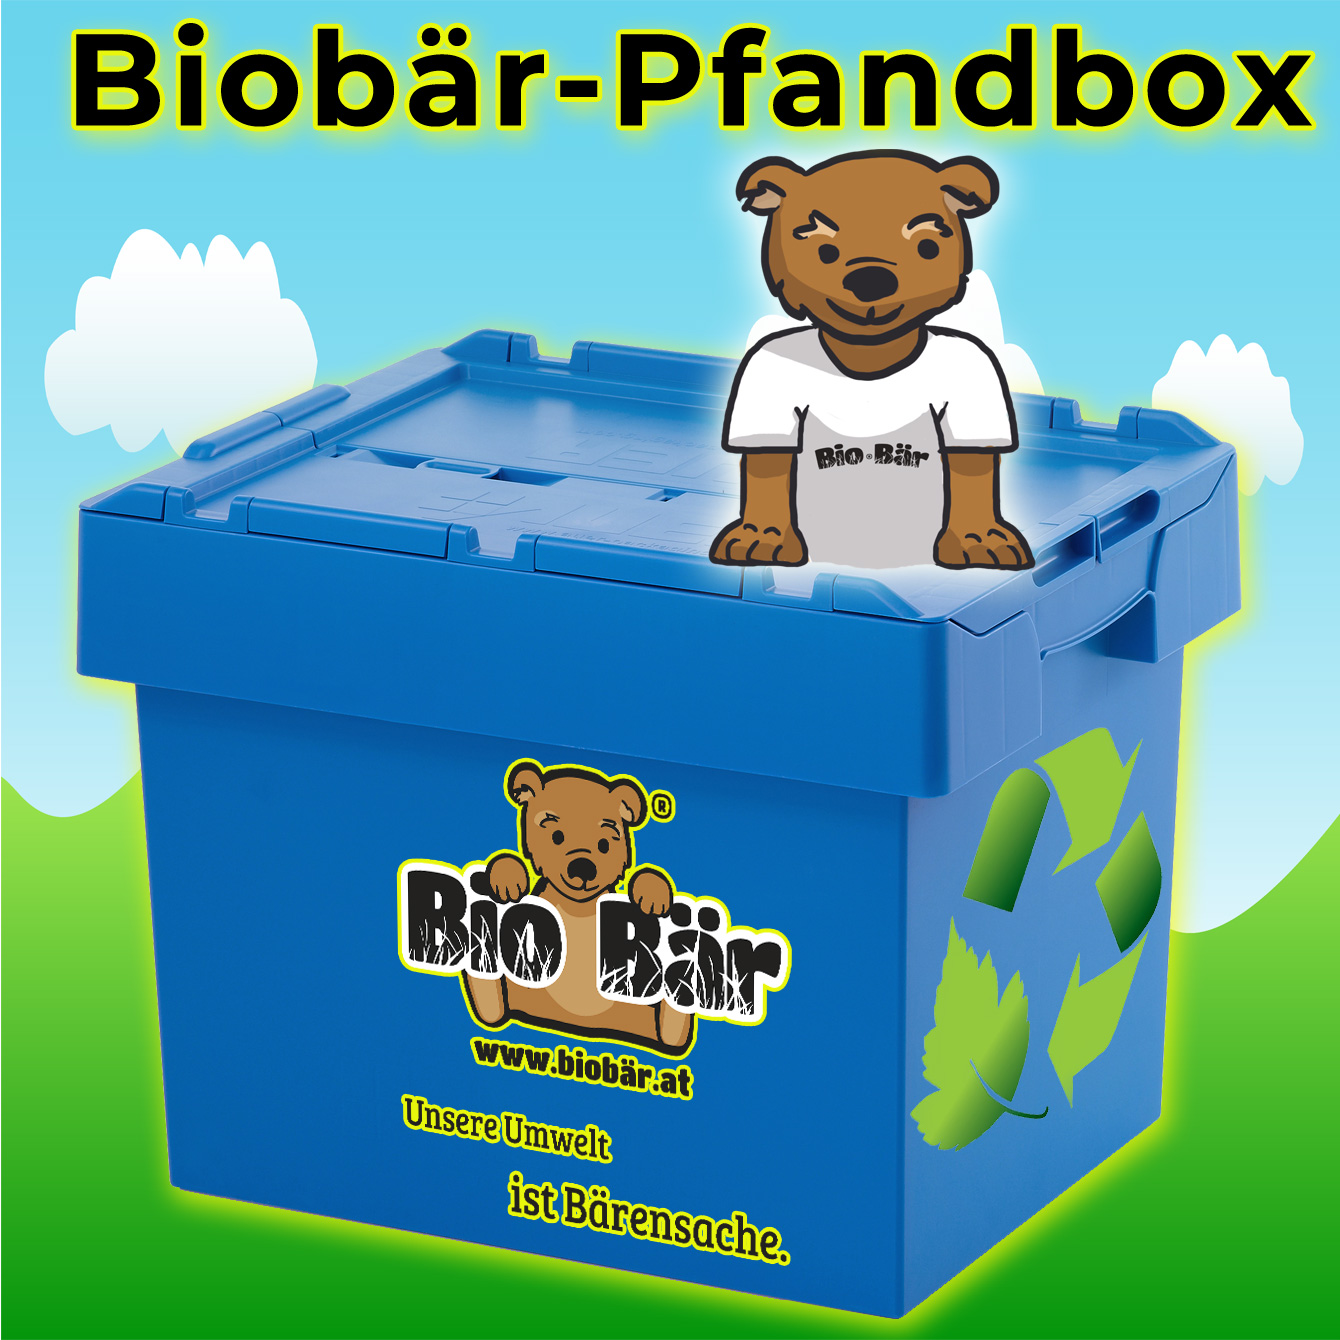 Biobär-Pfandbox